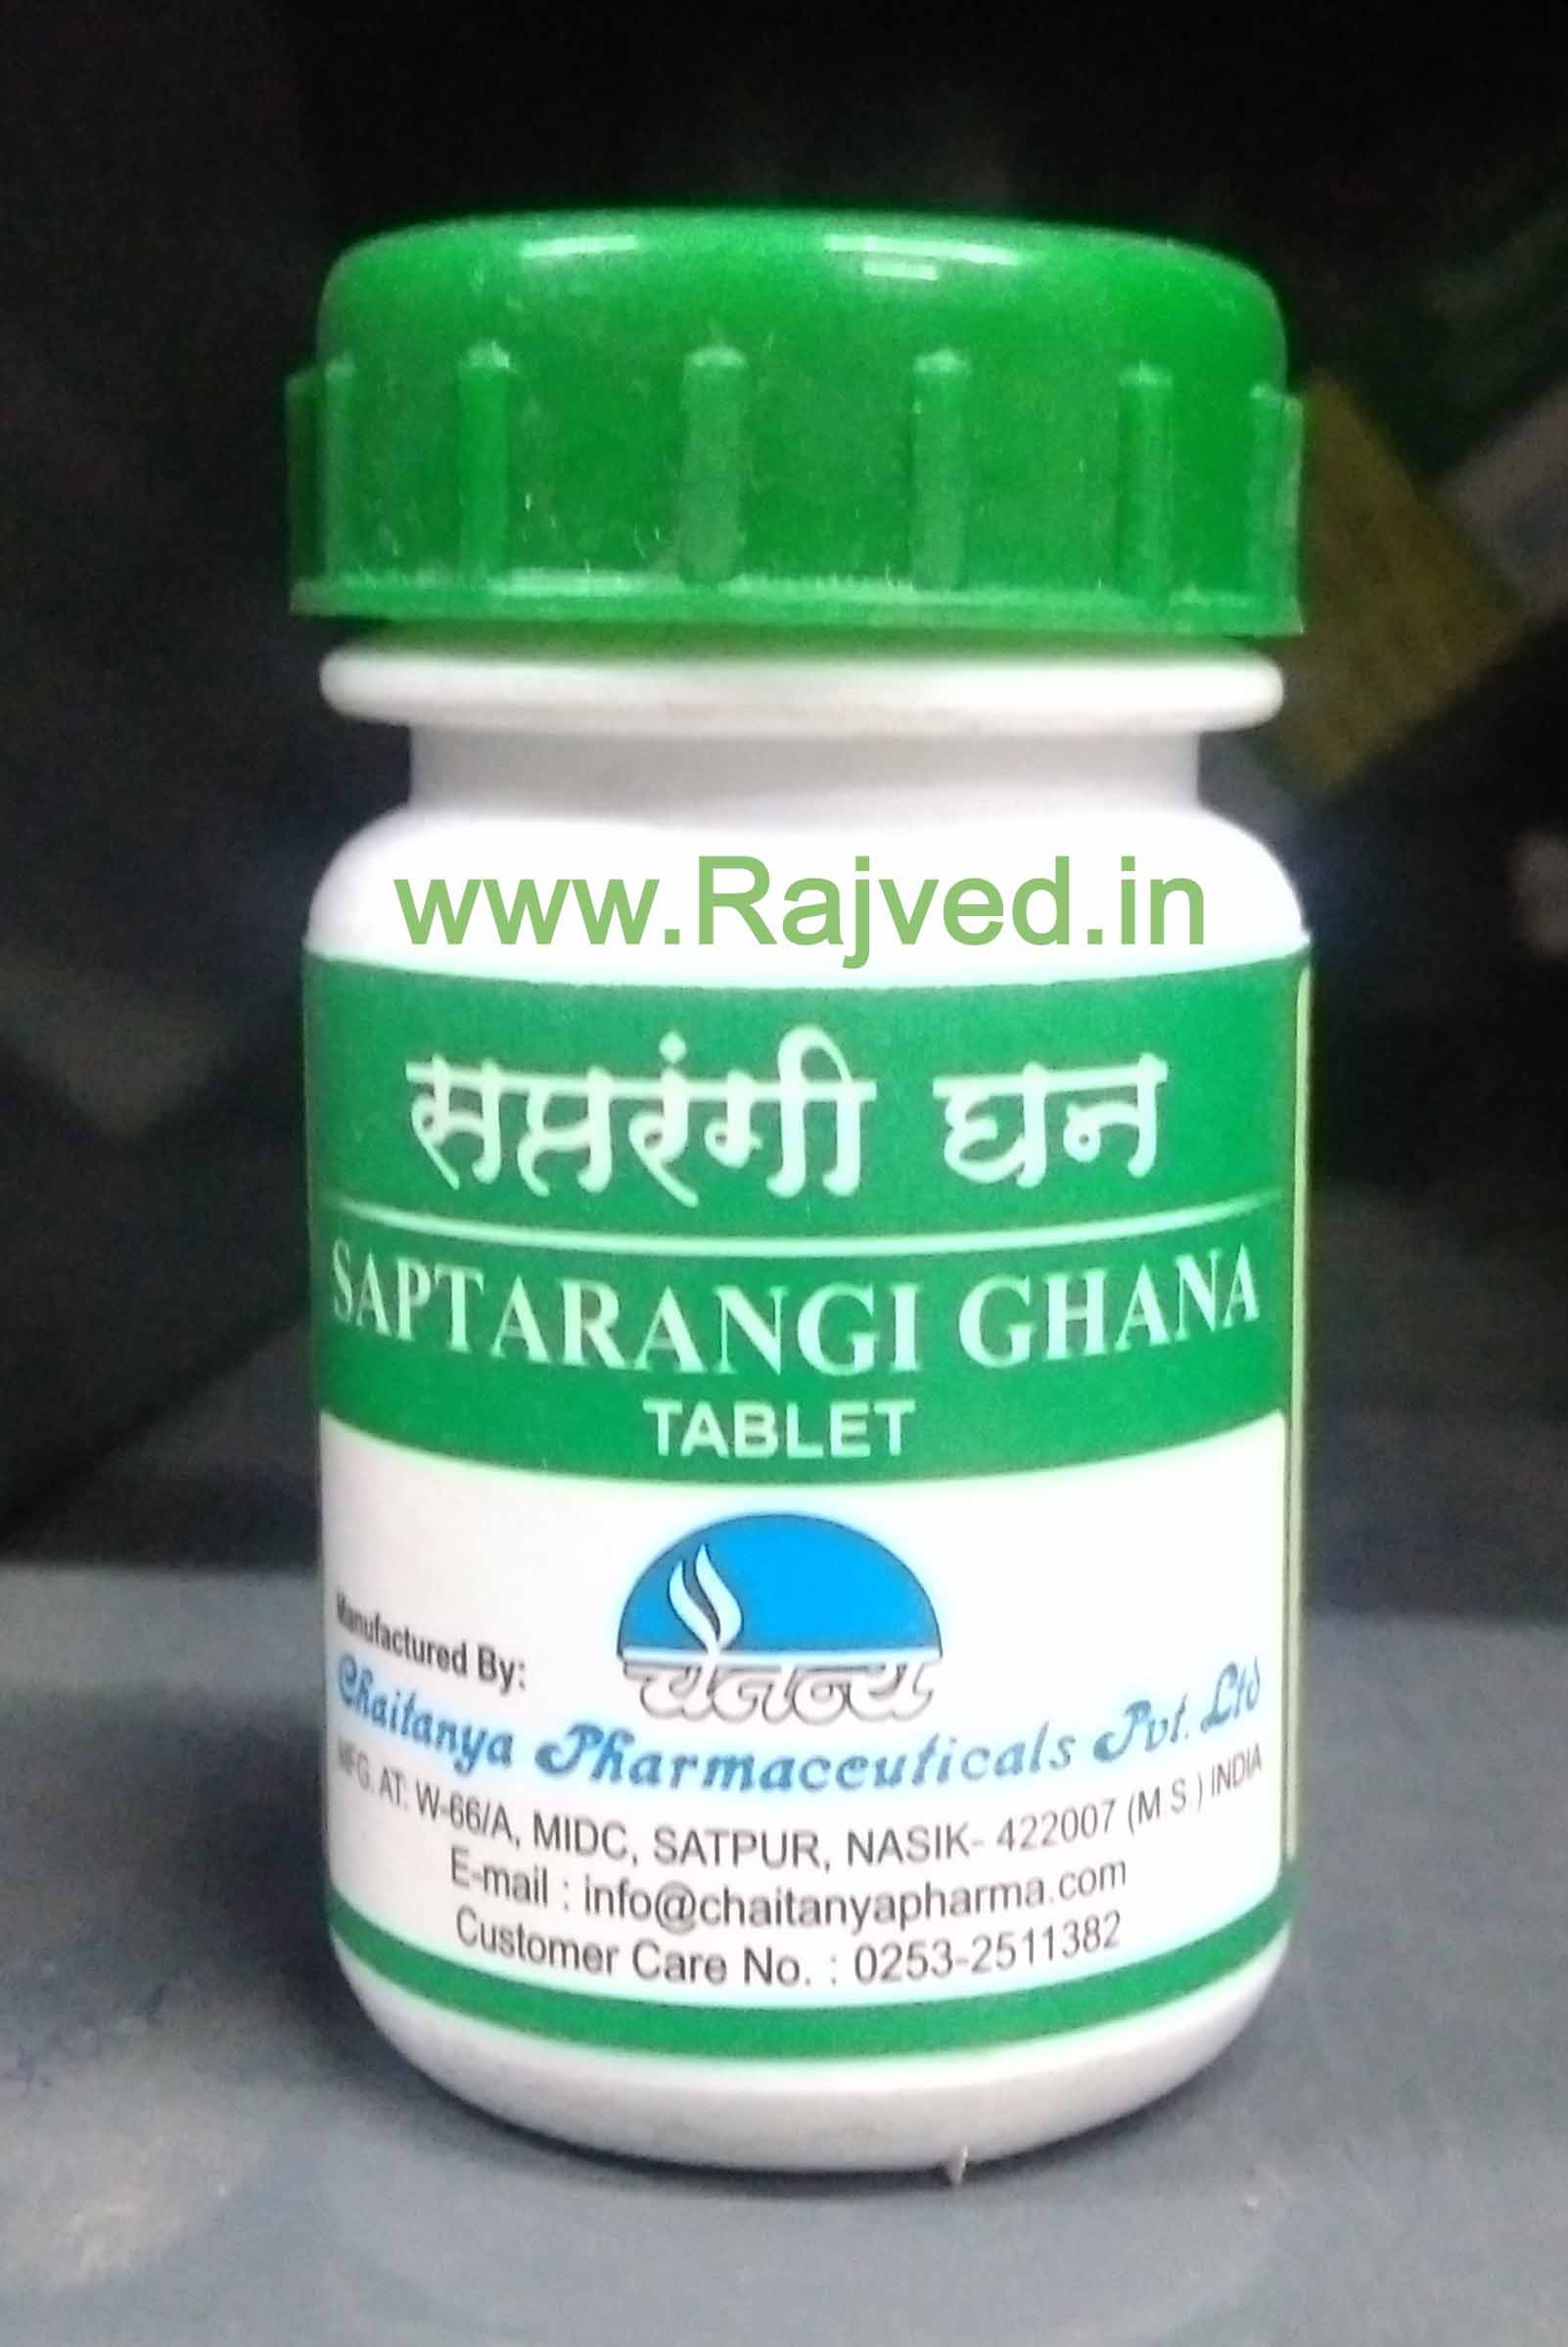 saptarangi ghana 60tab upto 20% off chaitanya pharmaceuticals